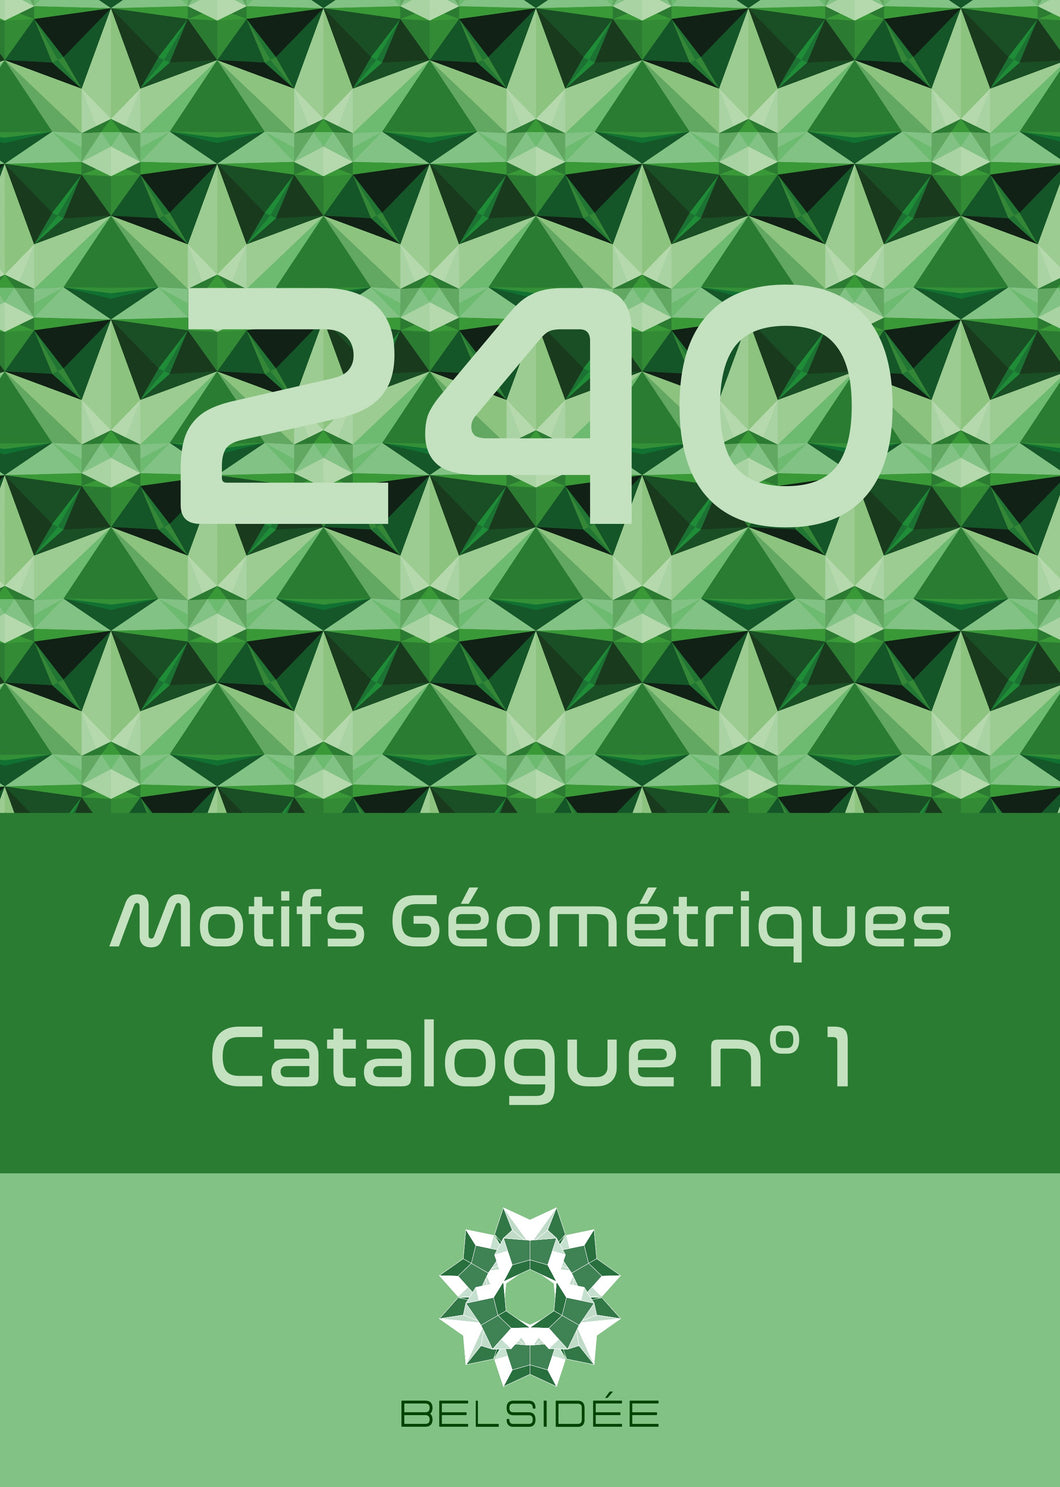 Catalogue n°1 - 240 motifs géométriques 2D